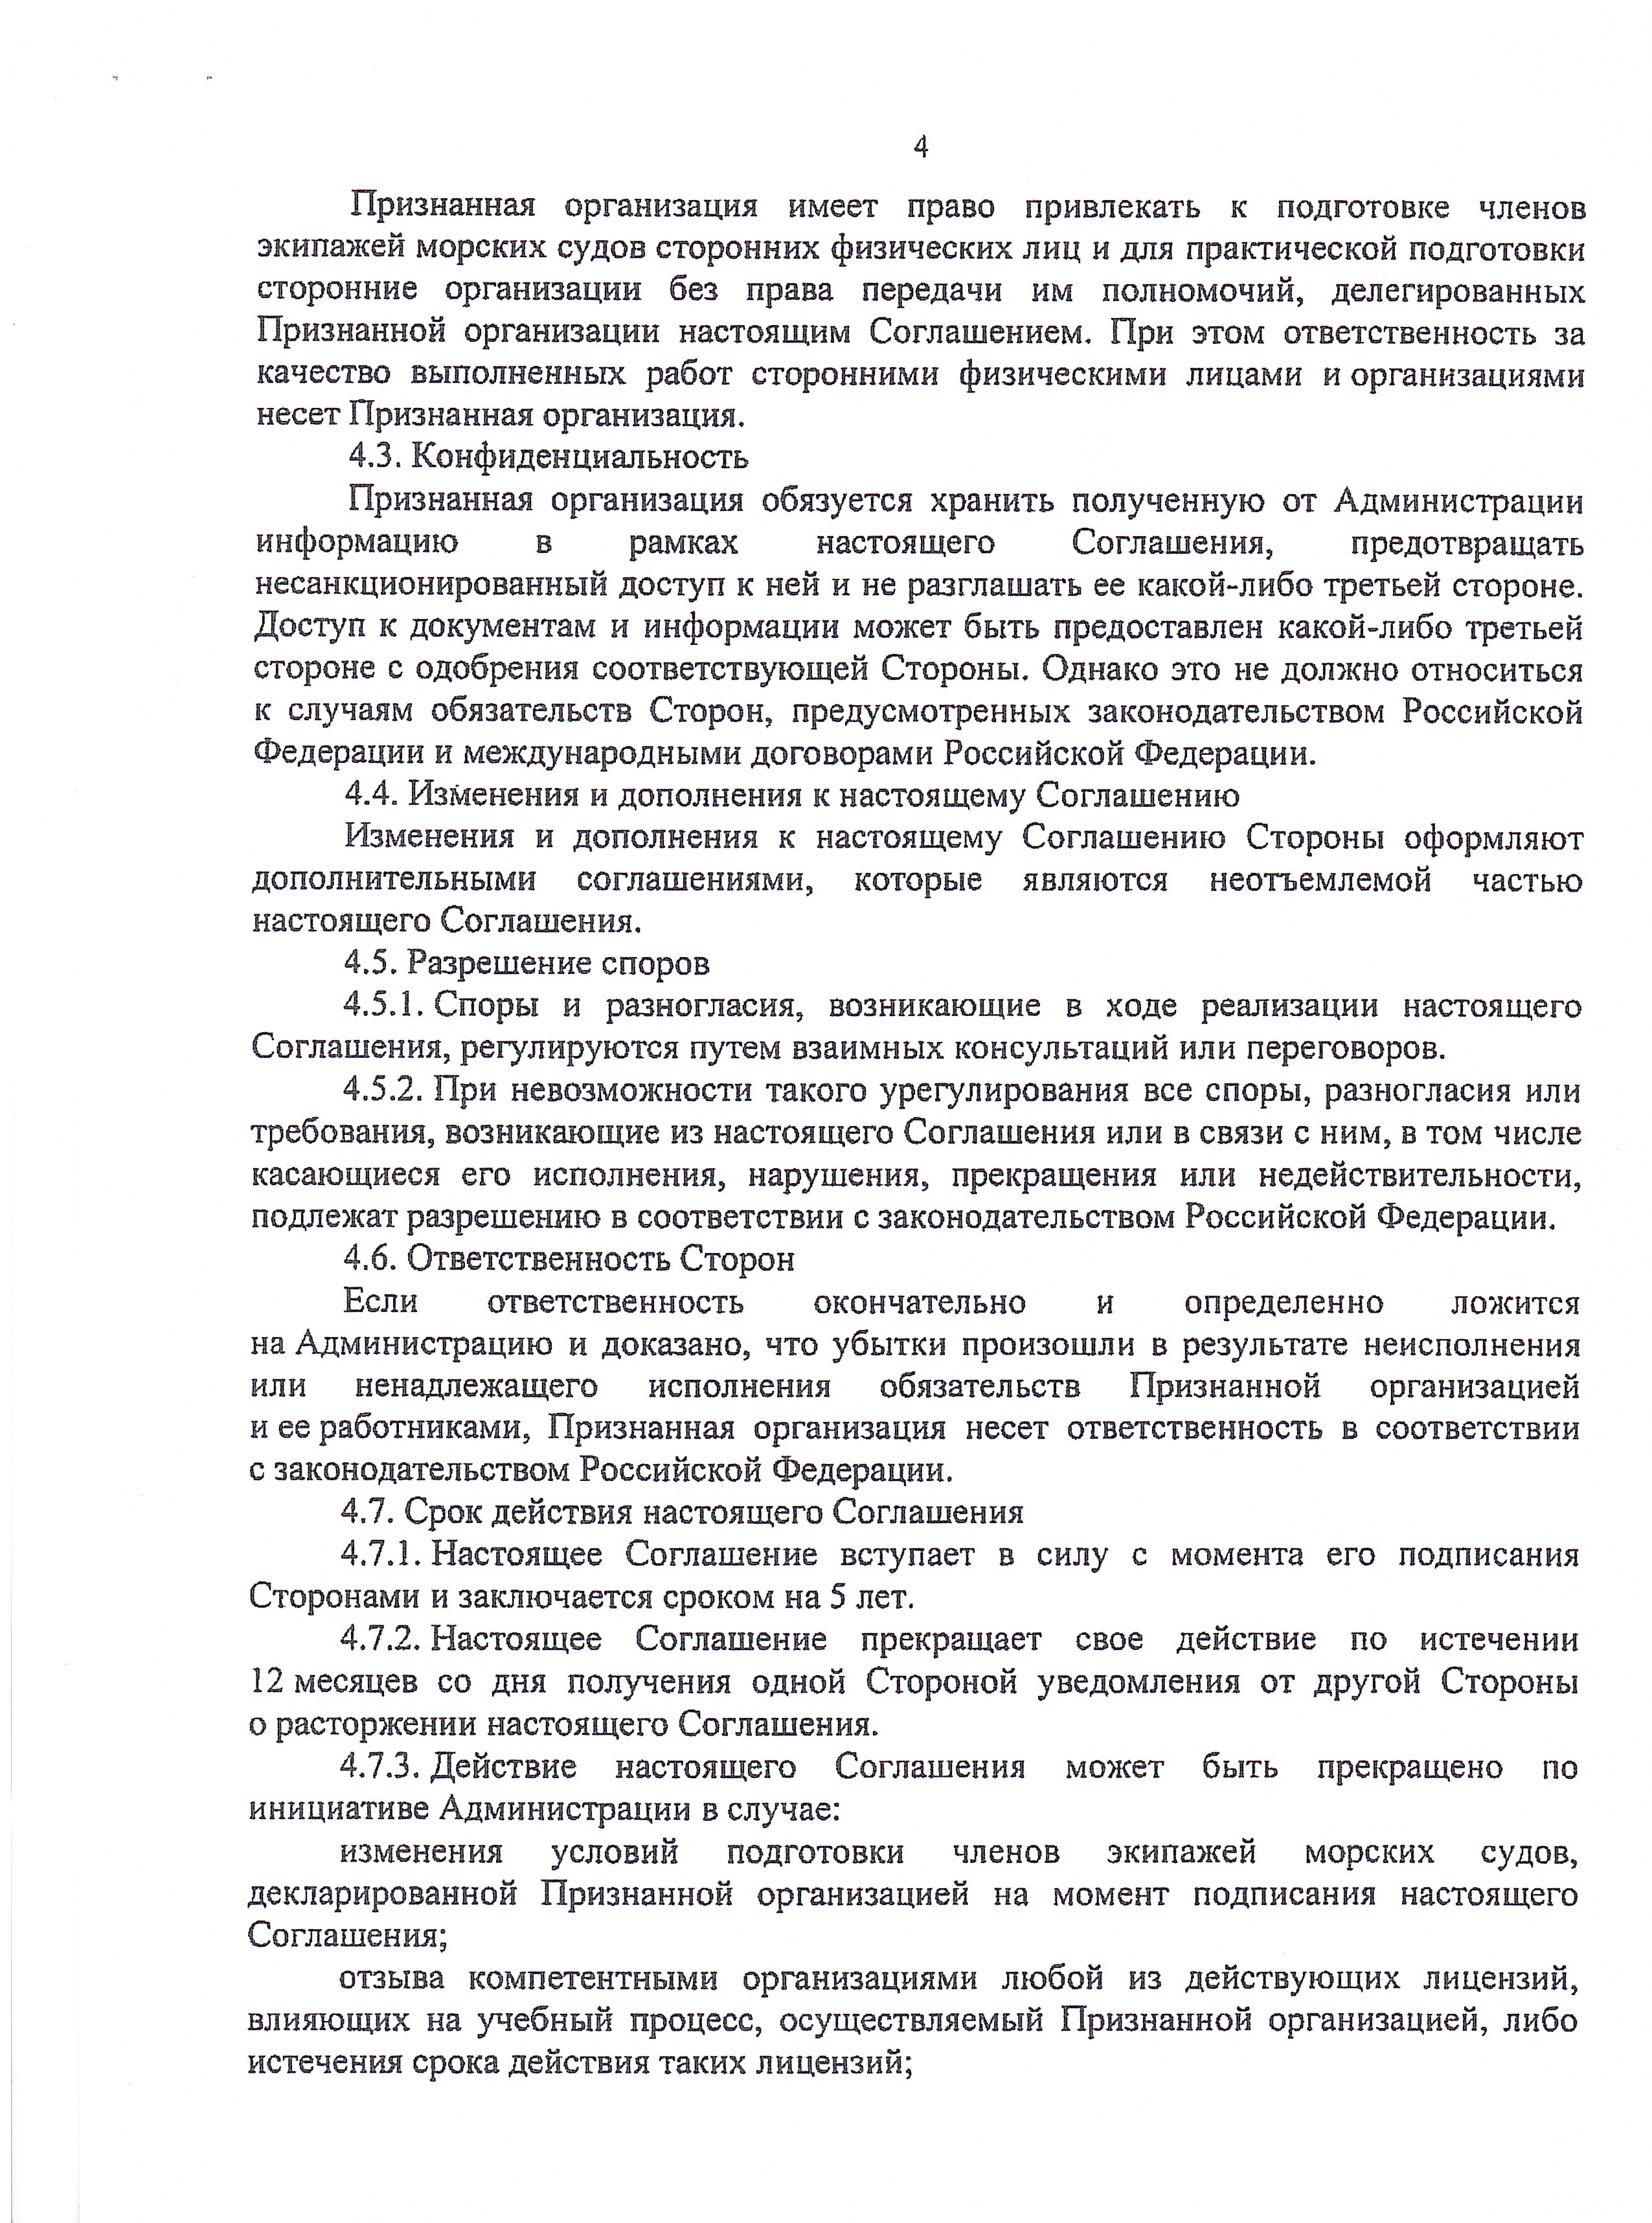 Соглашение о признании Министерства транспорта Российской Федерации  в области подготовки членов экипажей морских судов